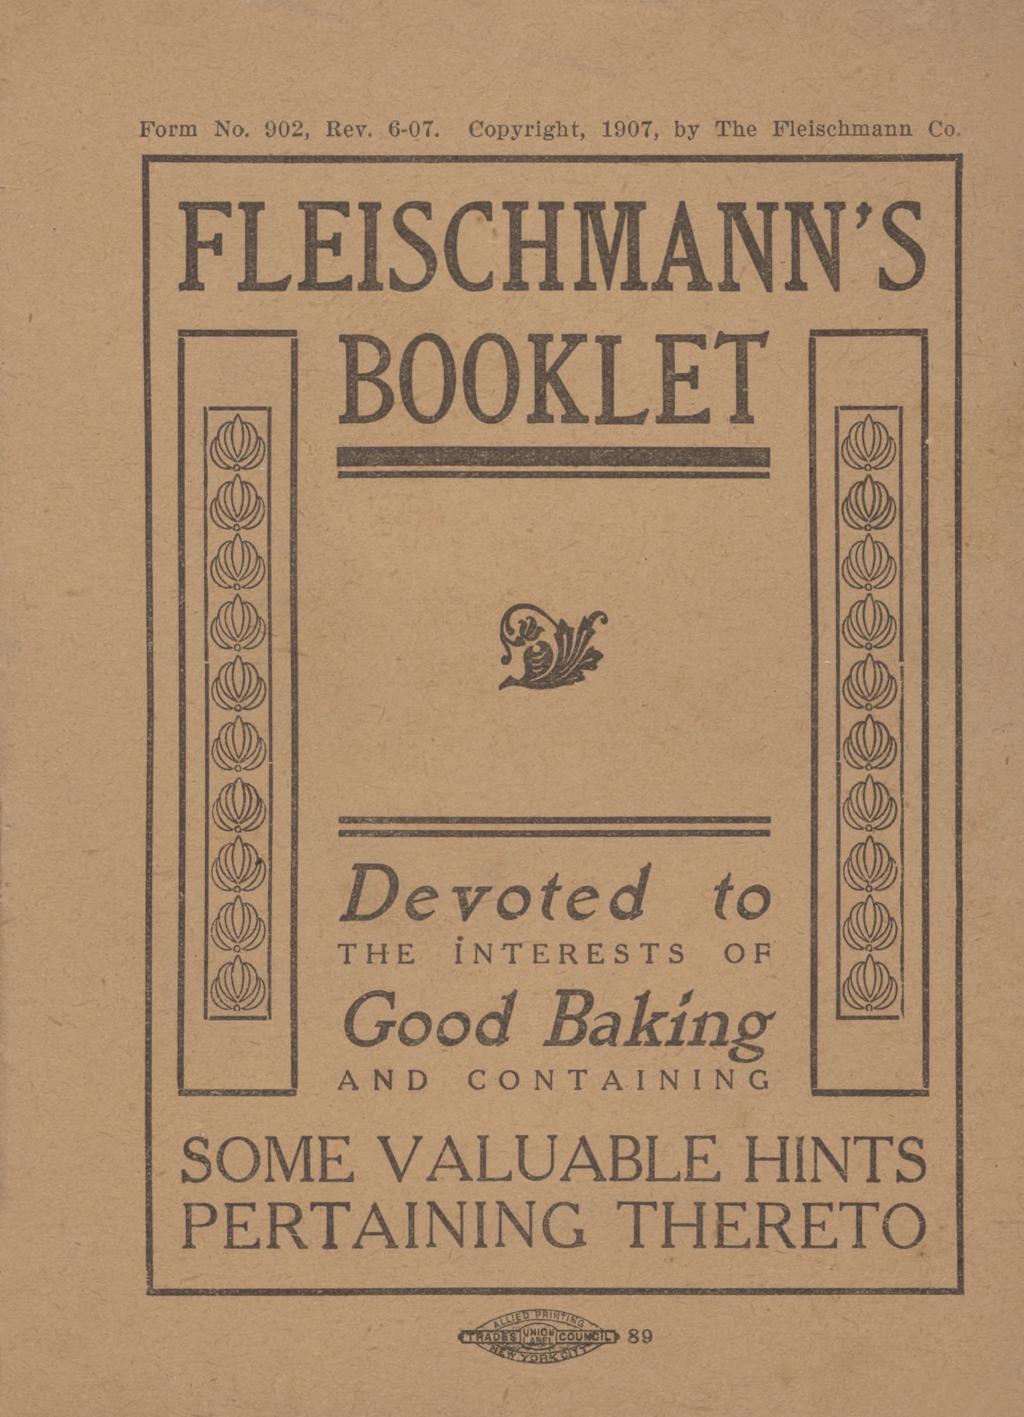 Form No. 902, Rev. 6-07. Copyright, 1907, by The Fleischmann.